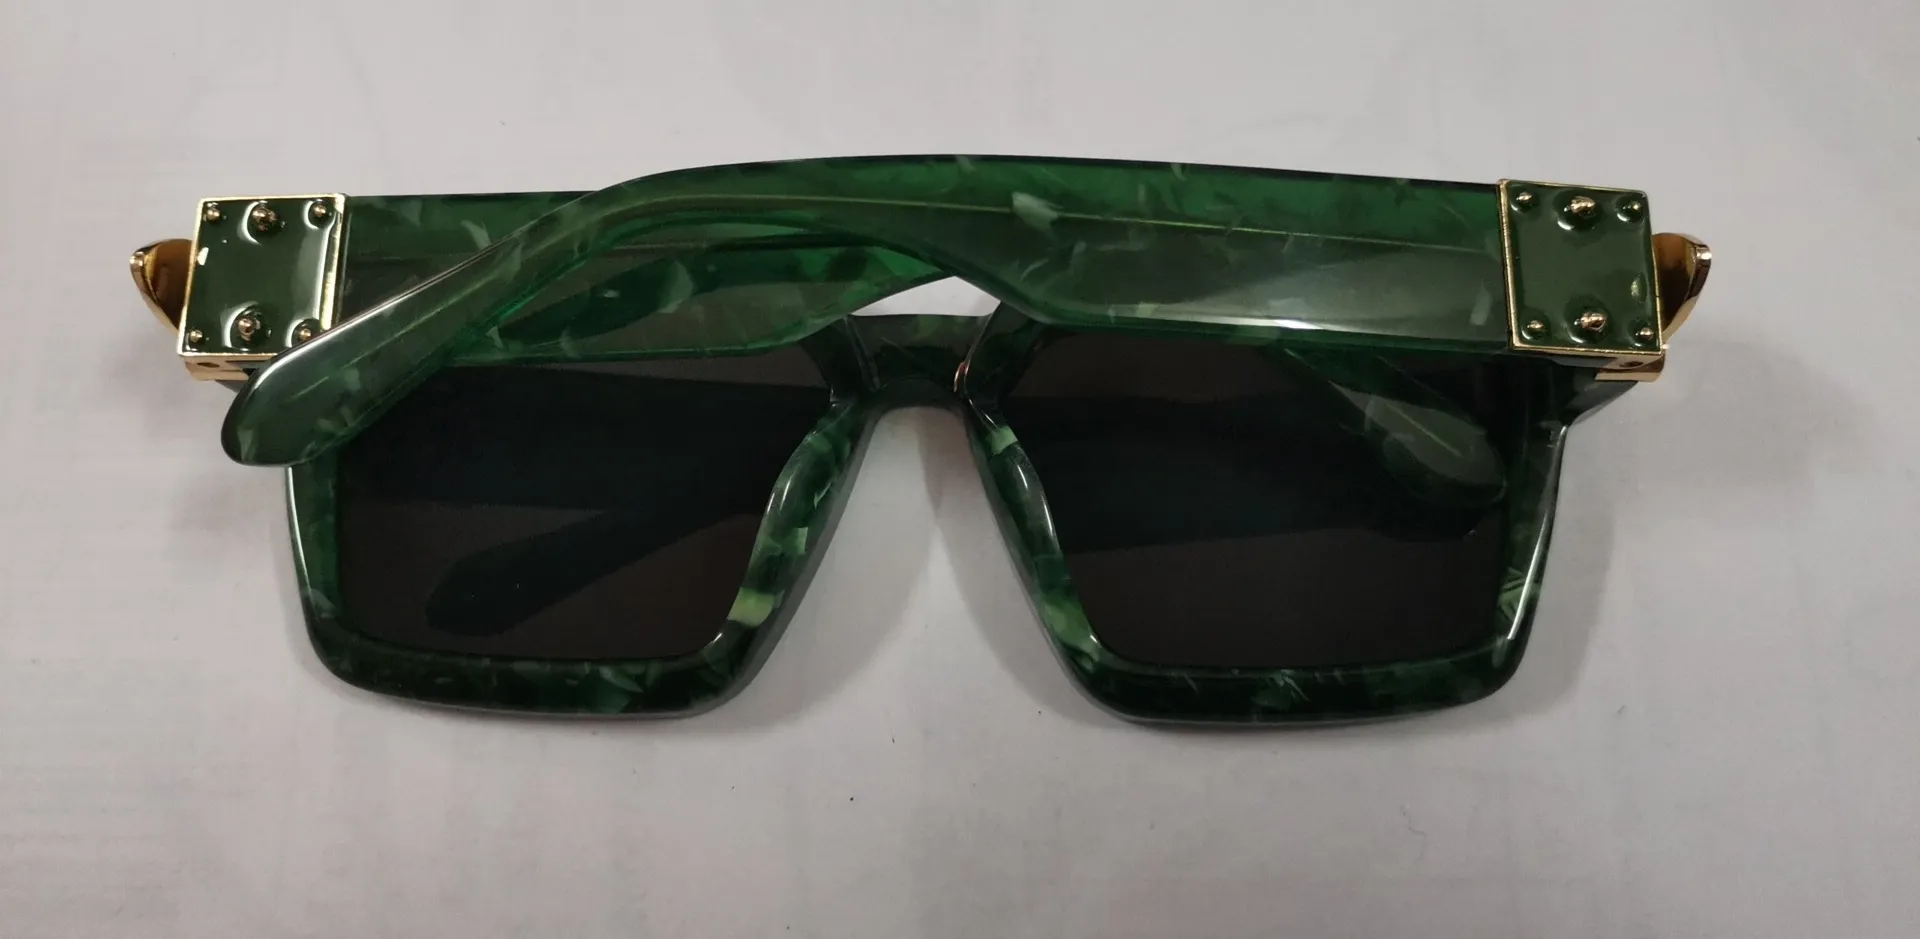 Новые солнцезащитные очки no c буква 1165 Солнцезащитные очки Gafas de Sol Songlass Ways Ellipse Box Солнцезащитные очки мужчины женщины солнцезащитные очки цвета Oculos с 236x